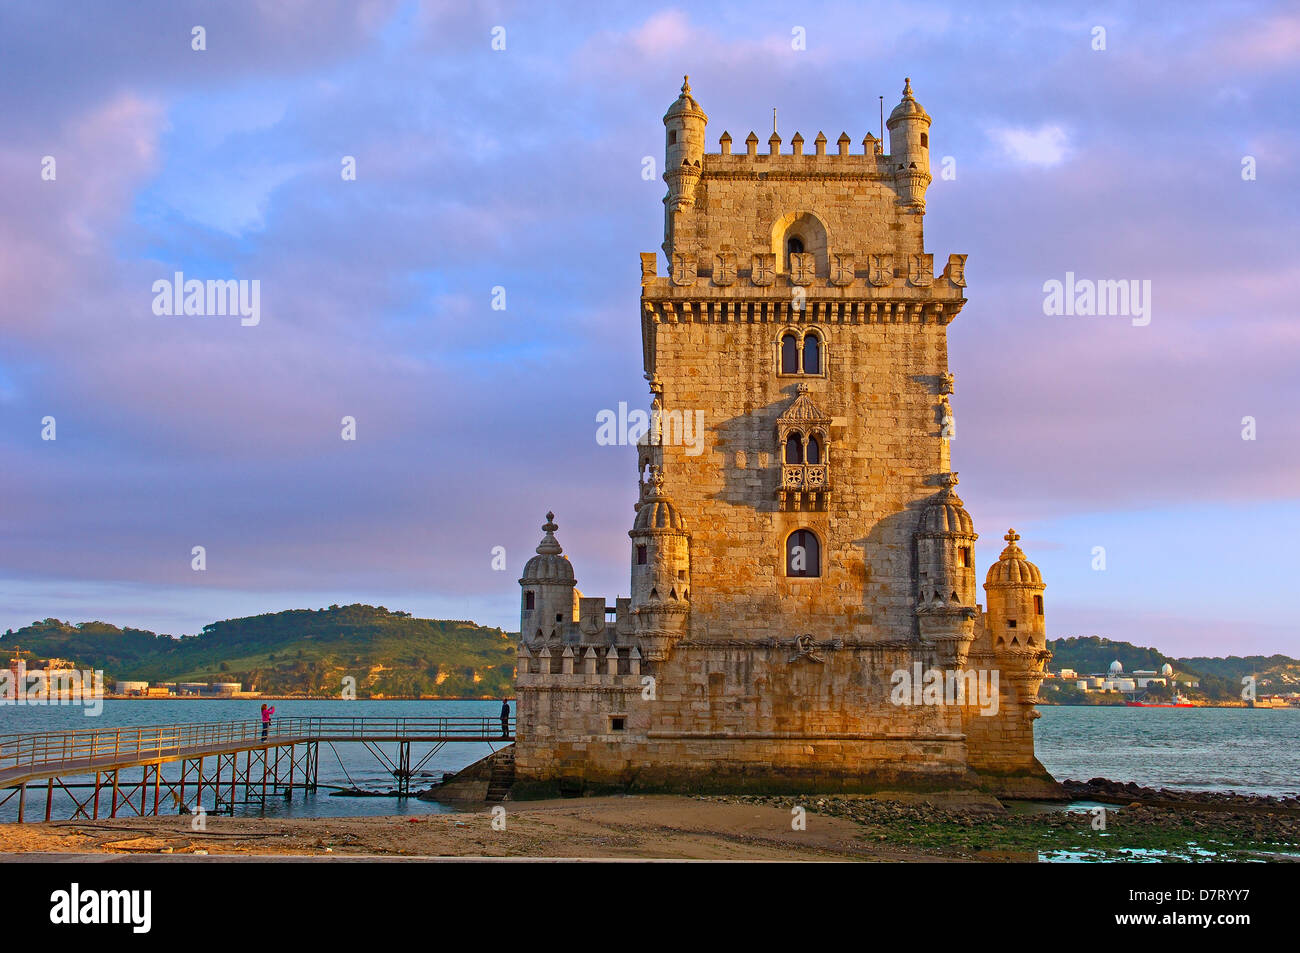 Lisbon. Belém Tower. Torre de Belém built by Francisco de Arruda. Portugal. Europe Stock Photo